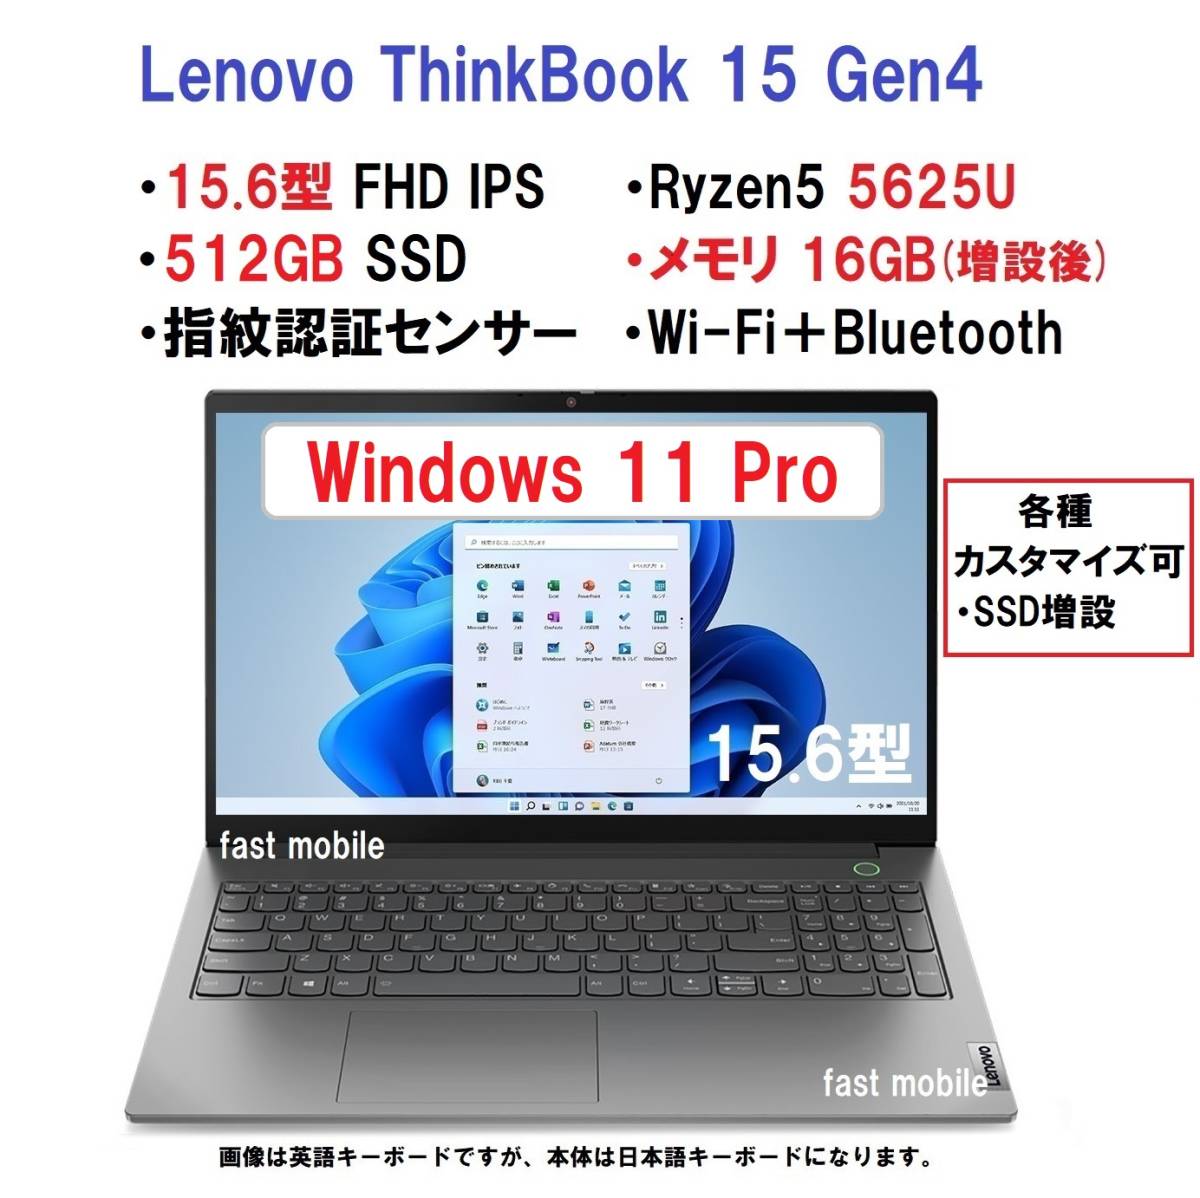 【領収書可】 超高速(16GBメモリ、512GB SSD、11Pro) Lenovo ThinkBook 15 Gen4 AMD Ryzen5 5625U/16GBメモリ/512GB SSD/15.6型FHD IPS液晶_画像1